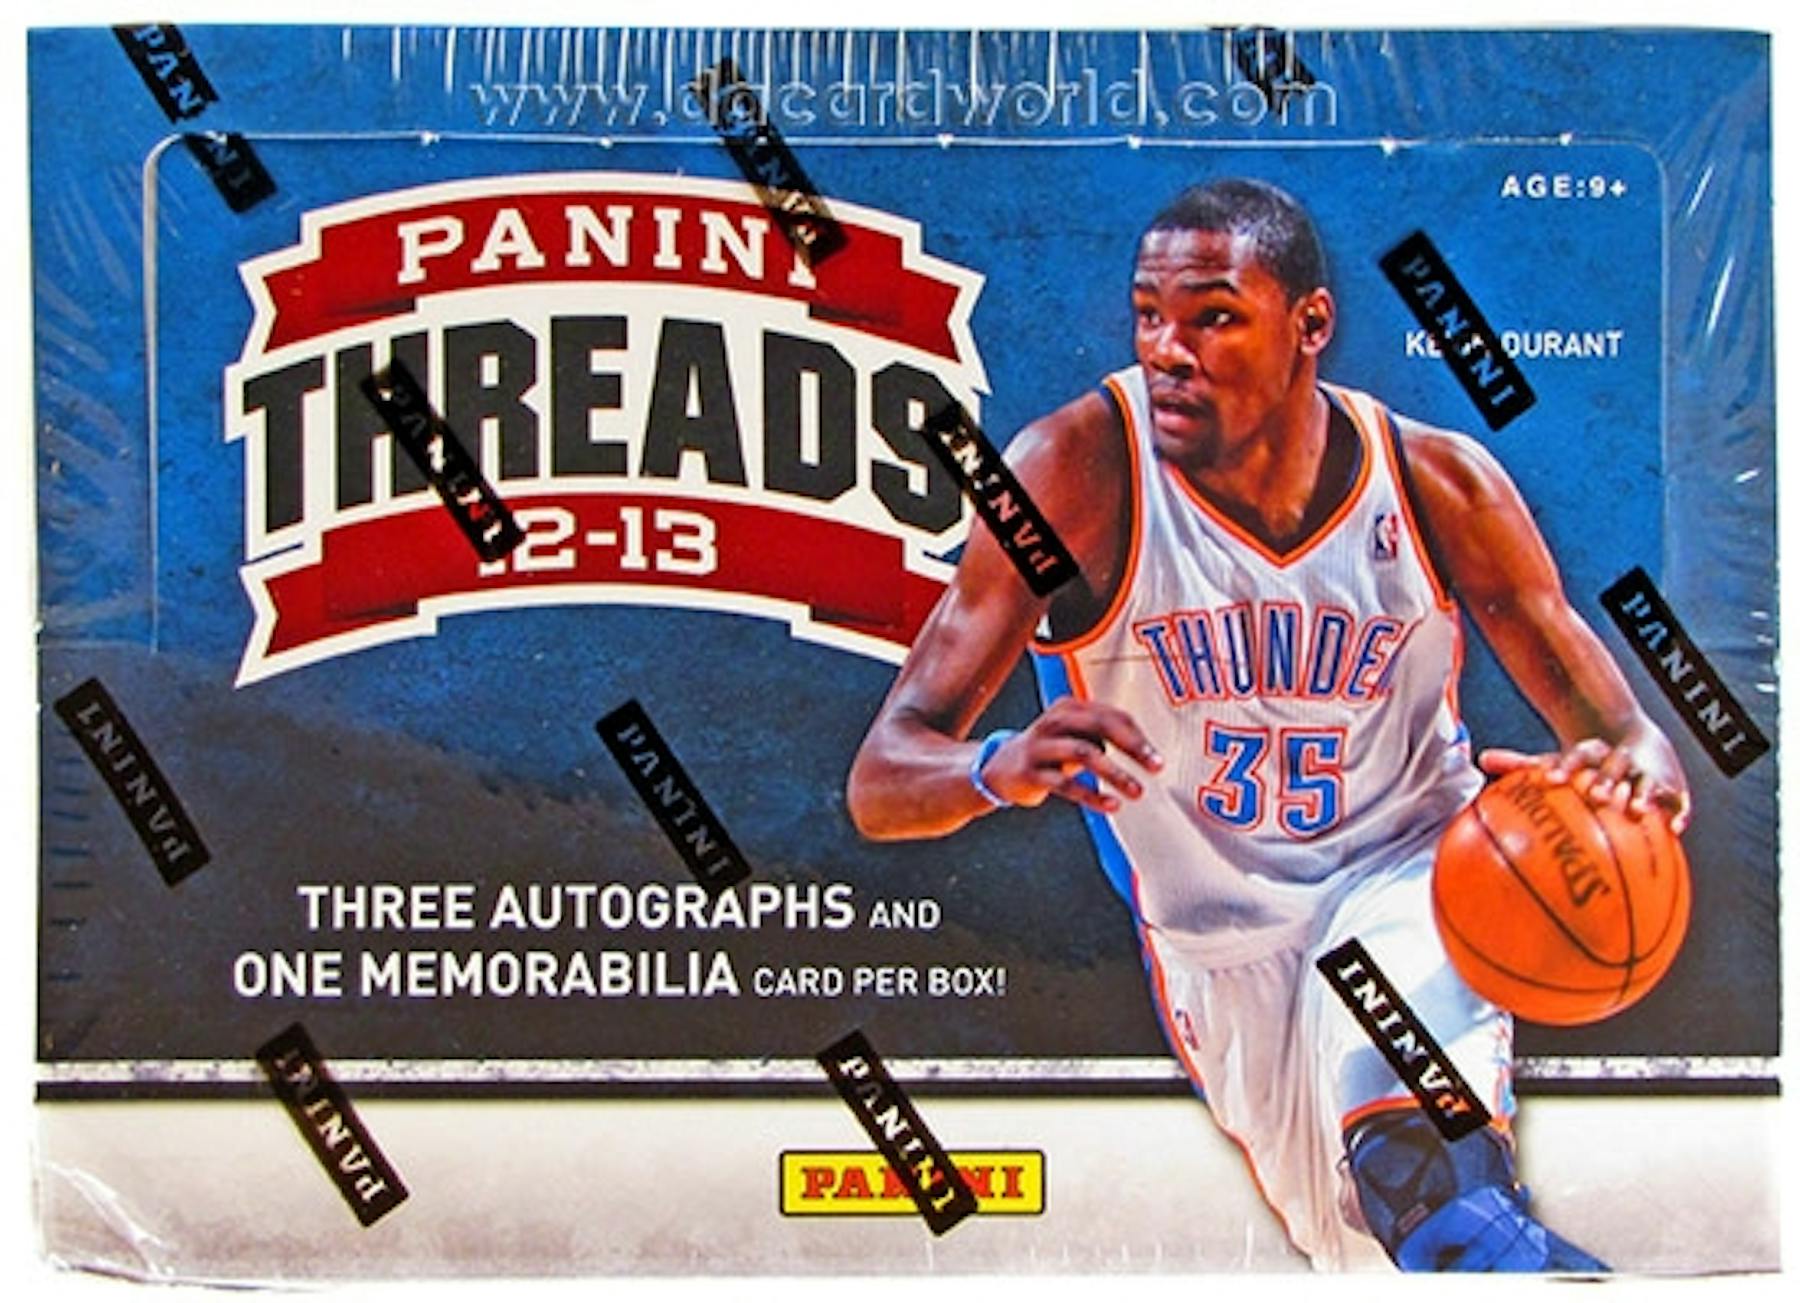 2012/13 Panini Threads Basketball Hobby Box | DA Card World1800 x 1303